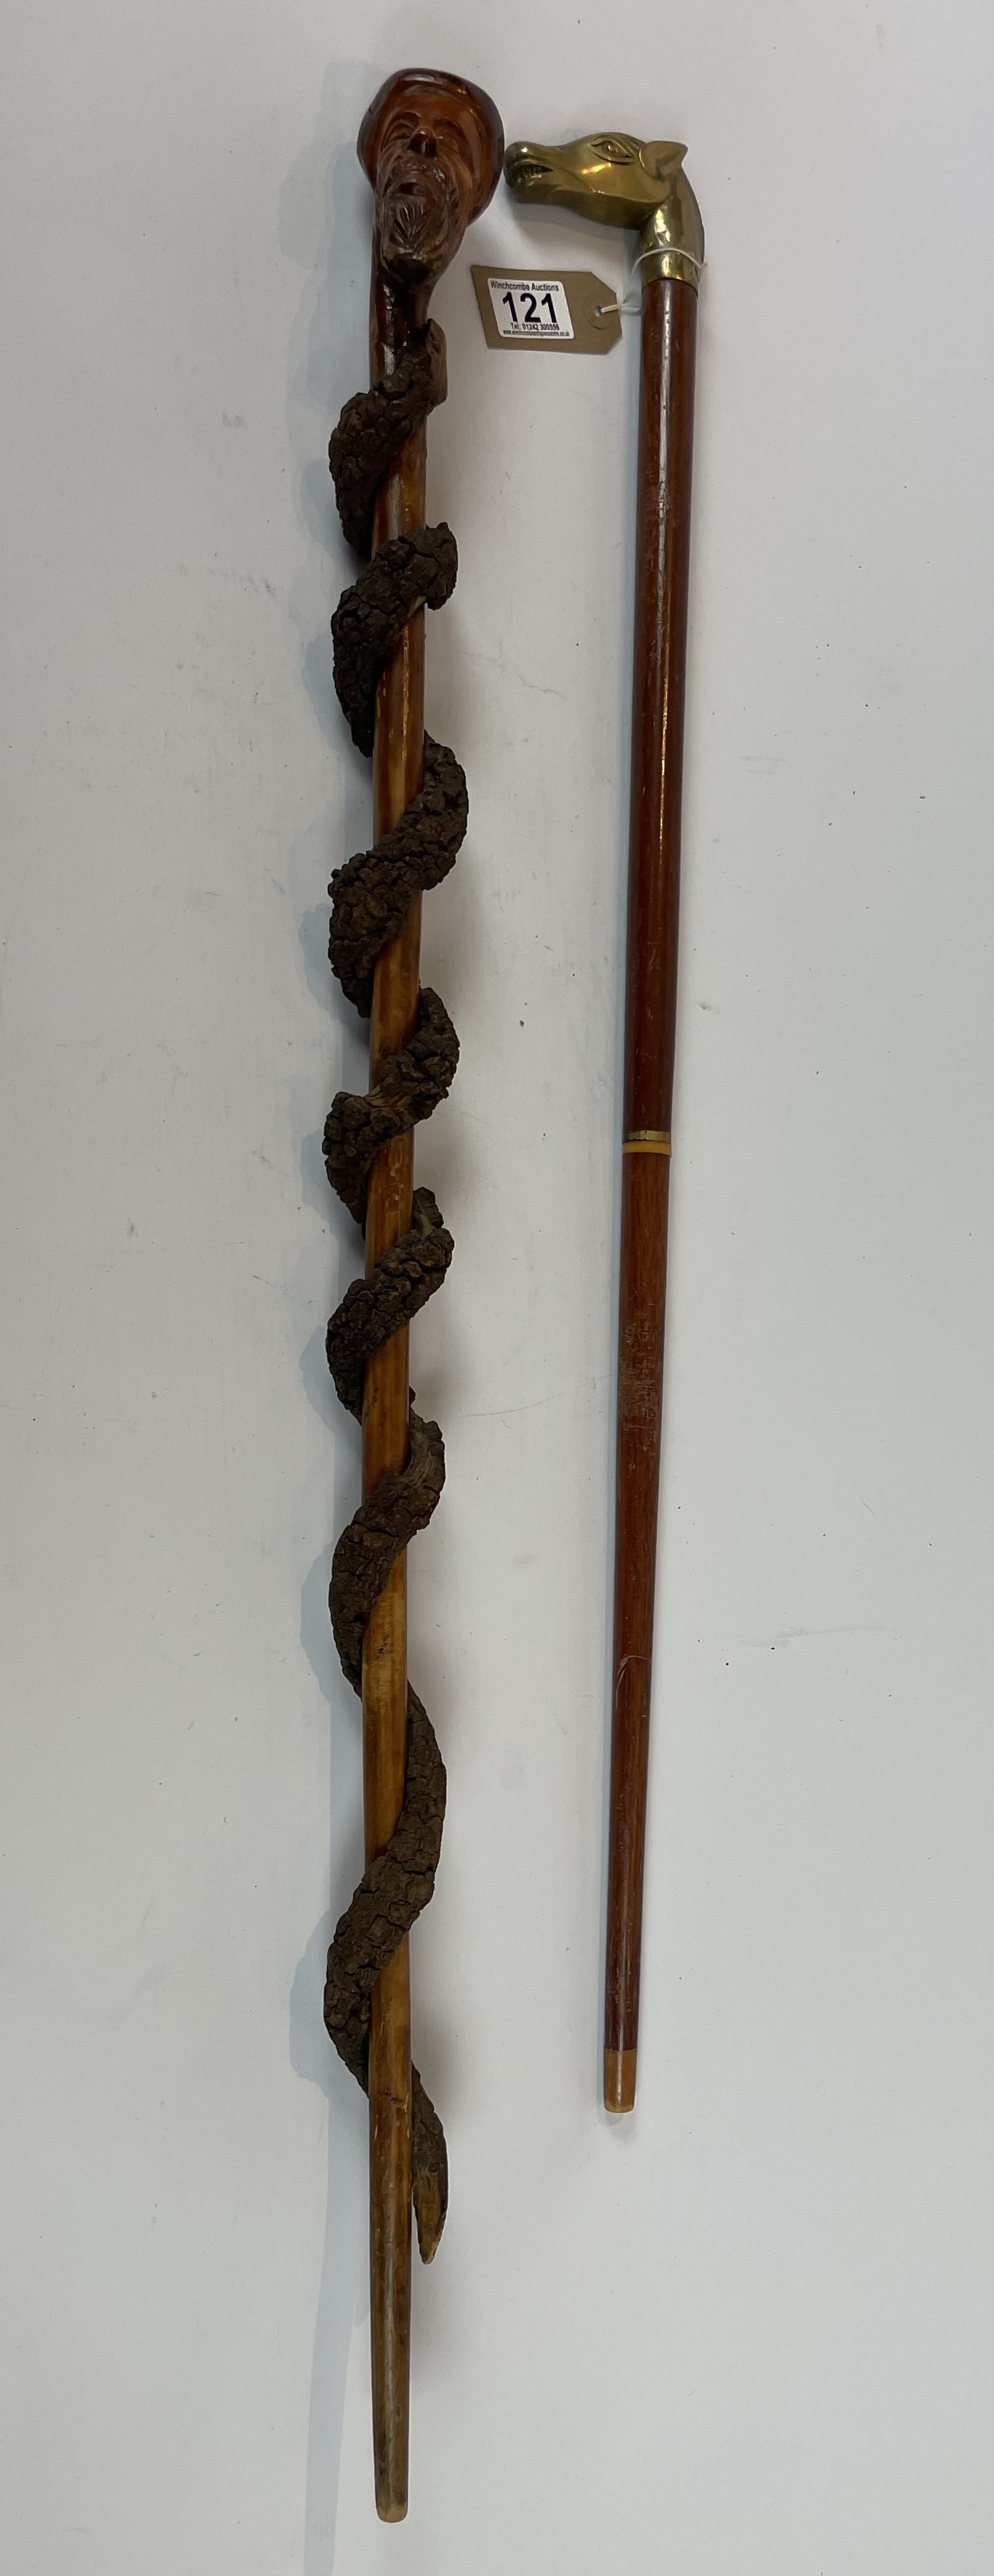 Two walking sticks - Image 2 of 2